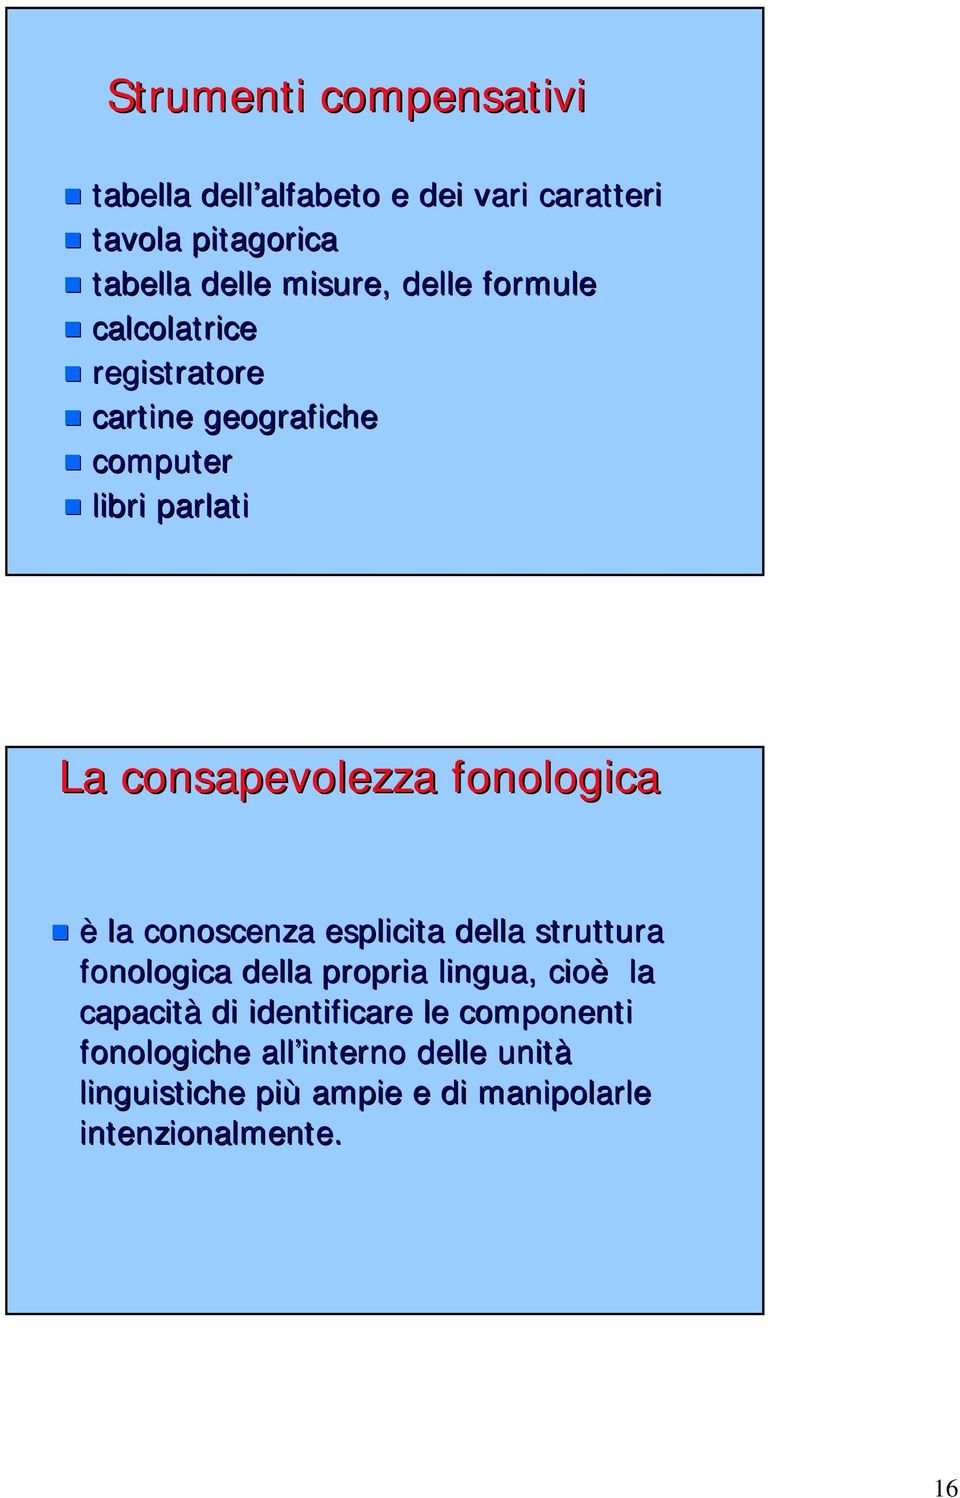 fonologica è la conoscenza esplicita della struttura fonologica della propria lingua, cioè la capacità di